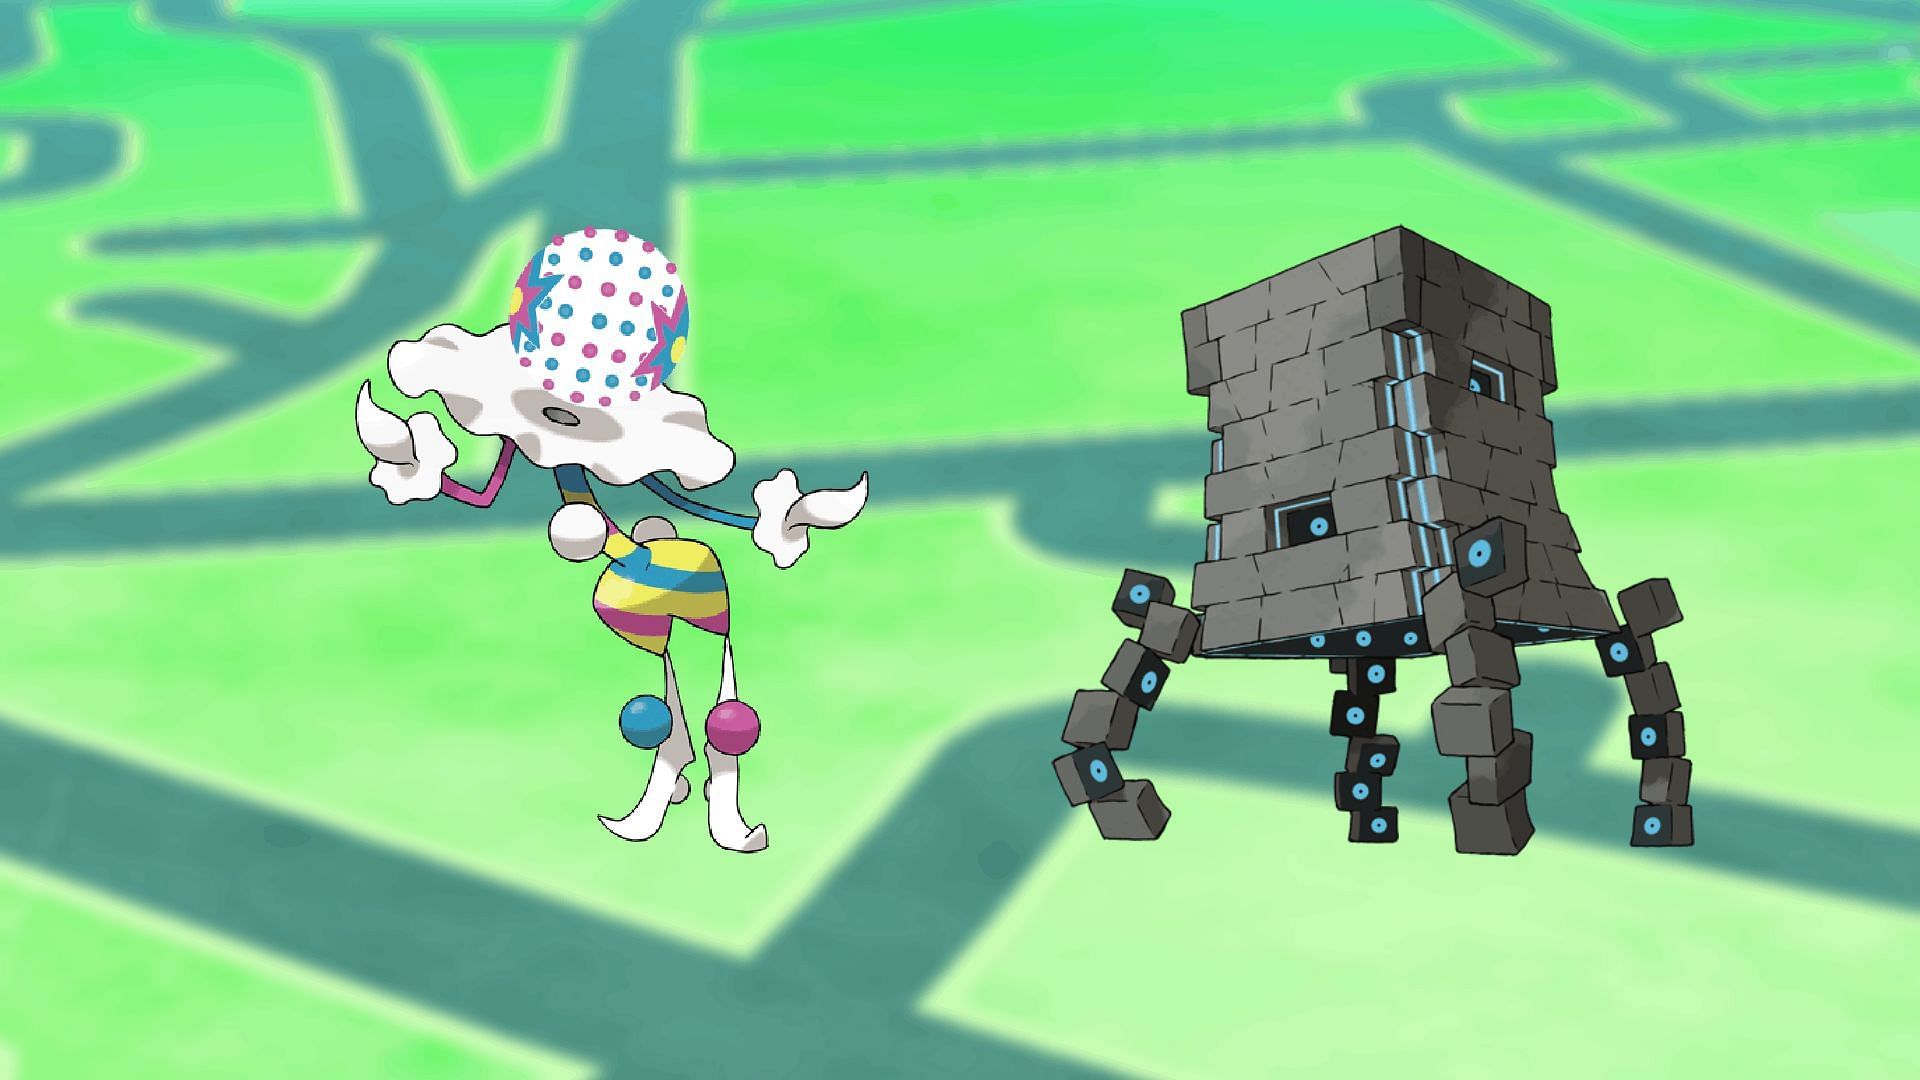 Blacephelon and Stakataka (Image via The Pokemon Company)